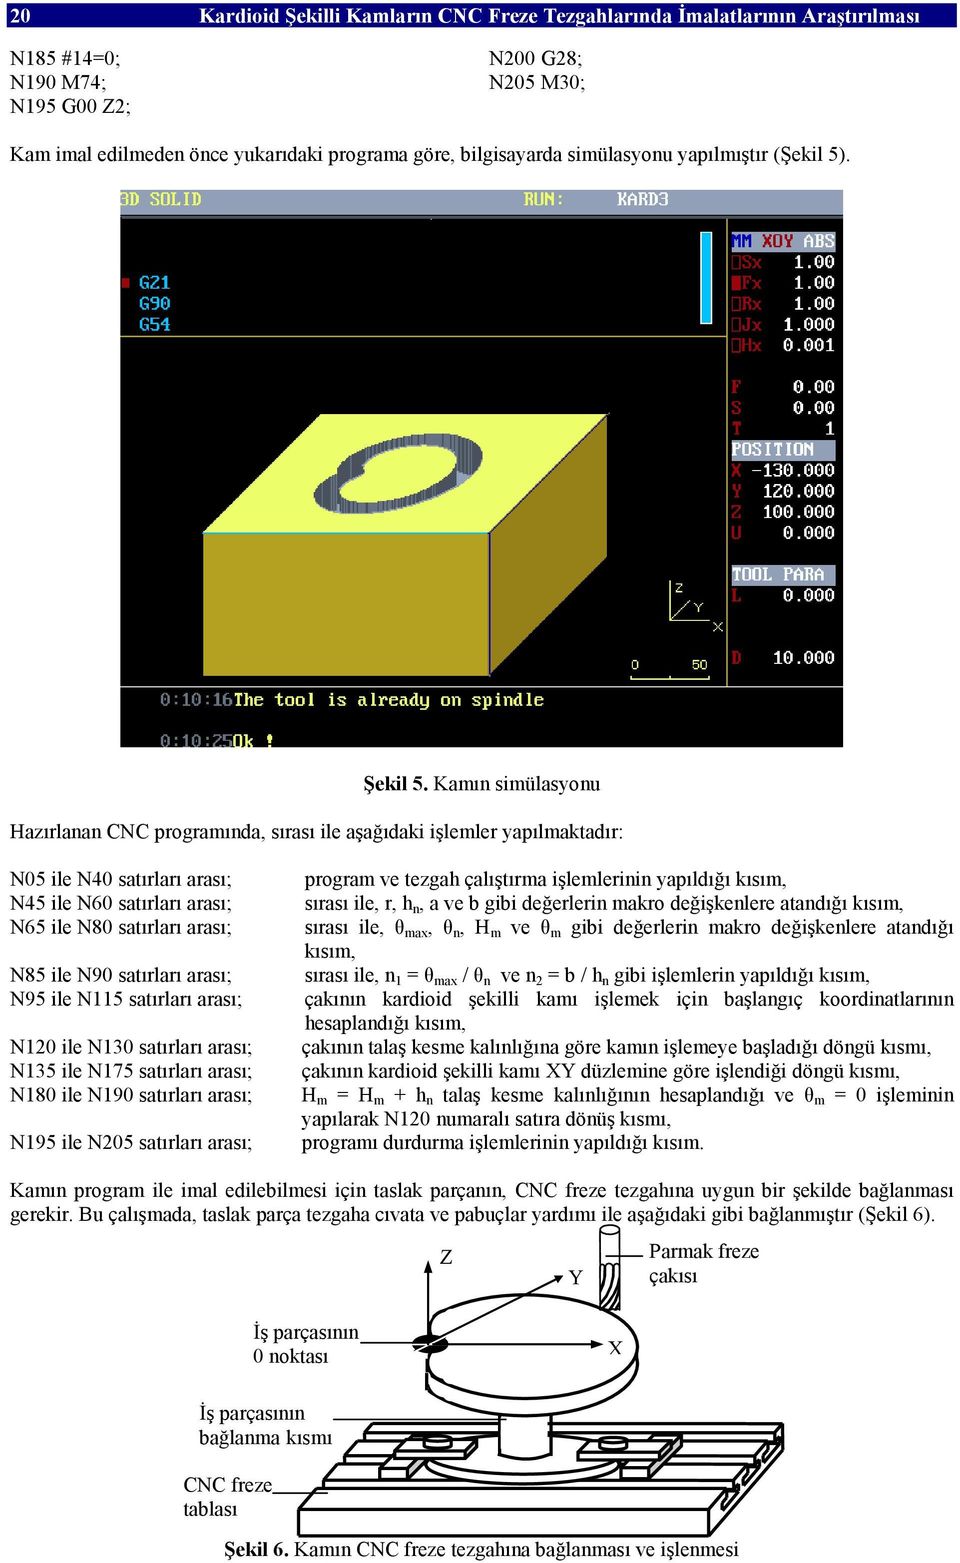 Kamın simülasyonu Hazırlanan CNC programında, sırası ile aşağıdaki işlemler yapılmaktadır: N05 ile N40 satırları arası; N45 ile N60 satırları arası; N65 ile N80 satırları arası; N85 ile N90 satırları